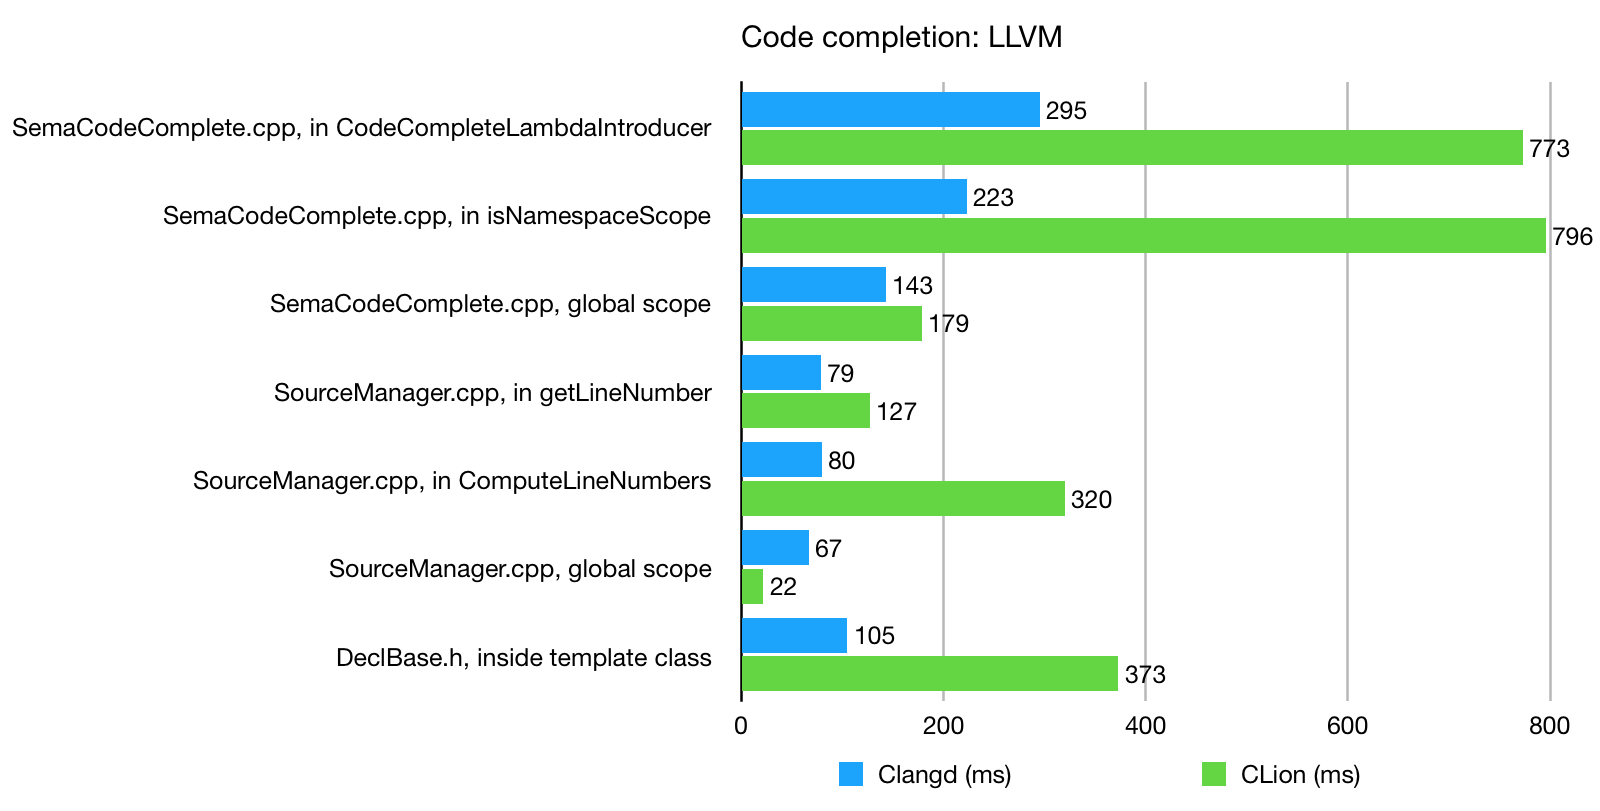 Code completion: LLVM